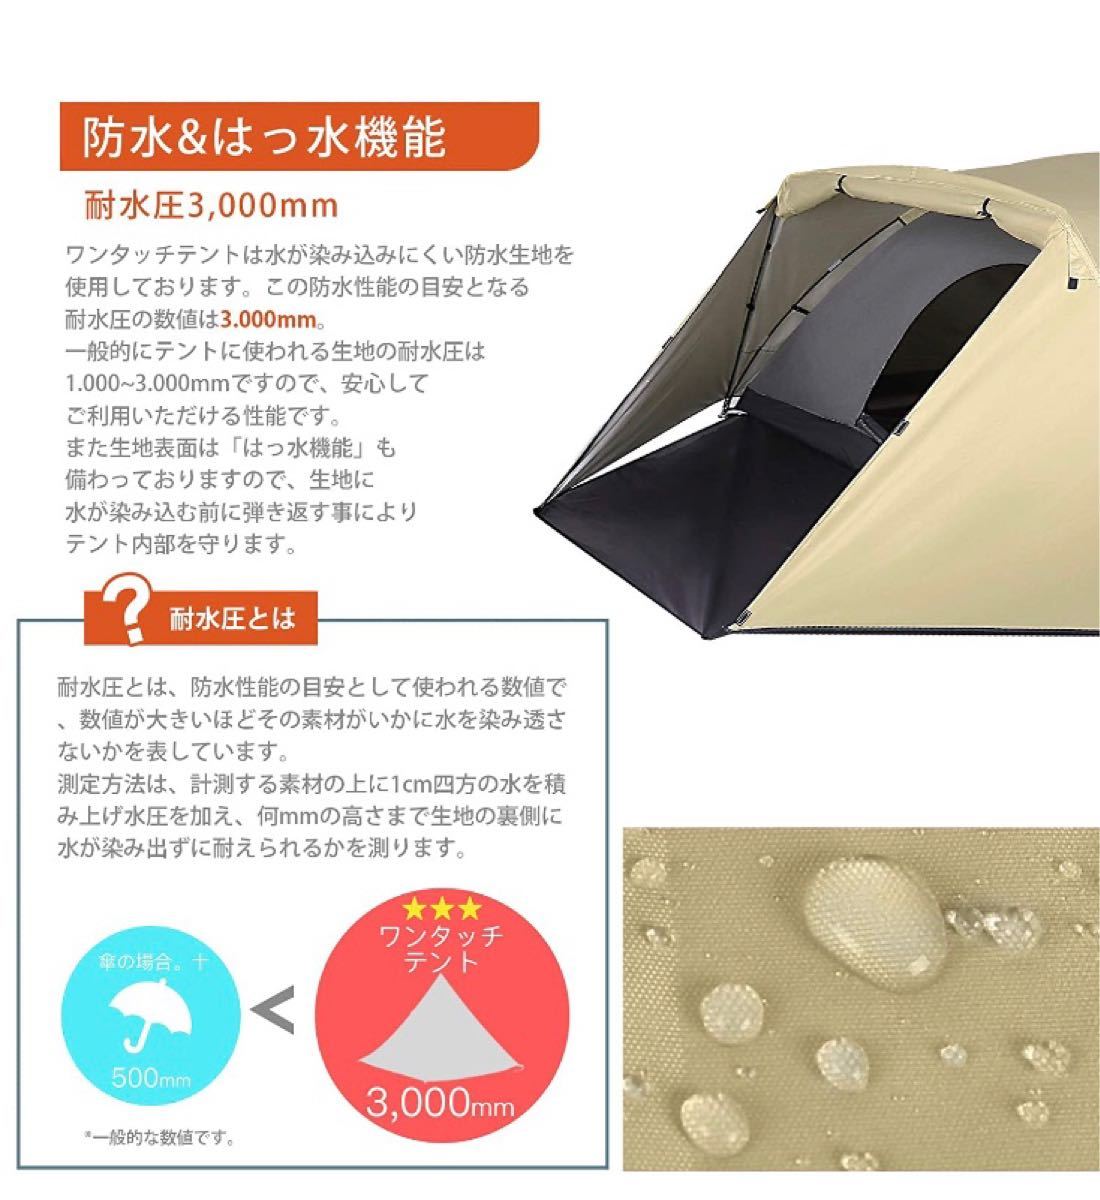 【送料無料】テント フライシート付キャンプテント フィールドキャンプドーム